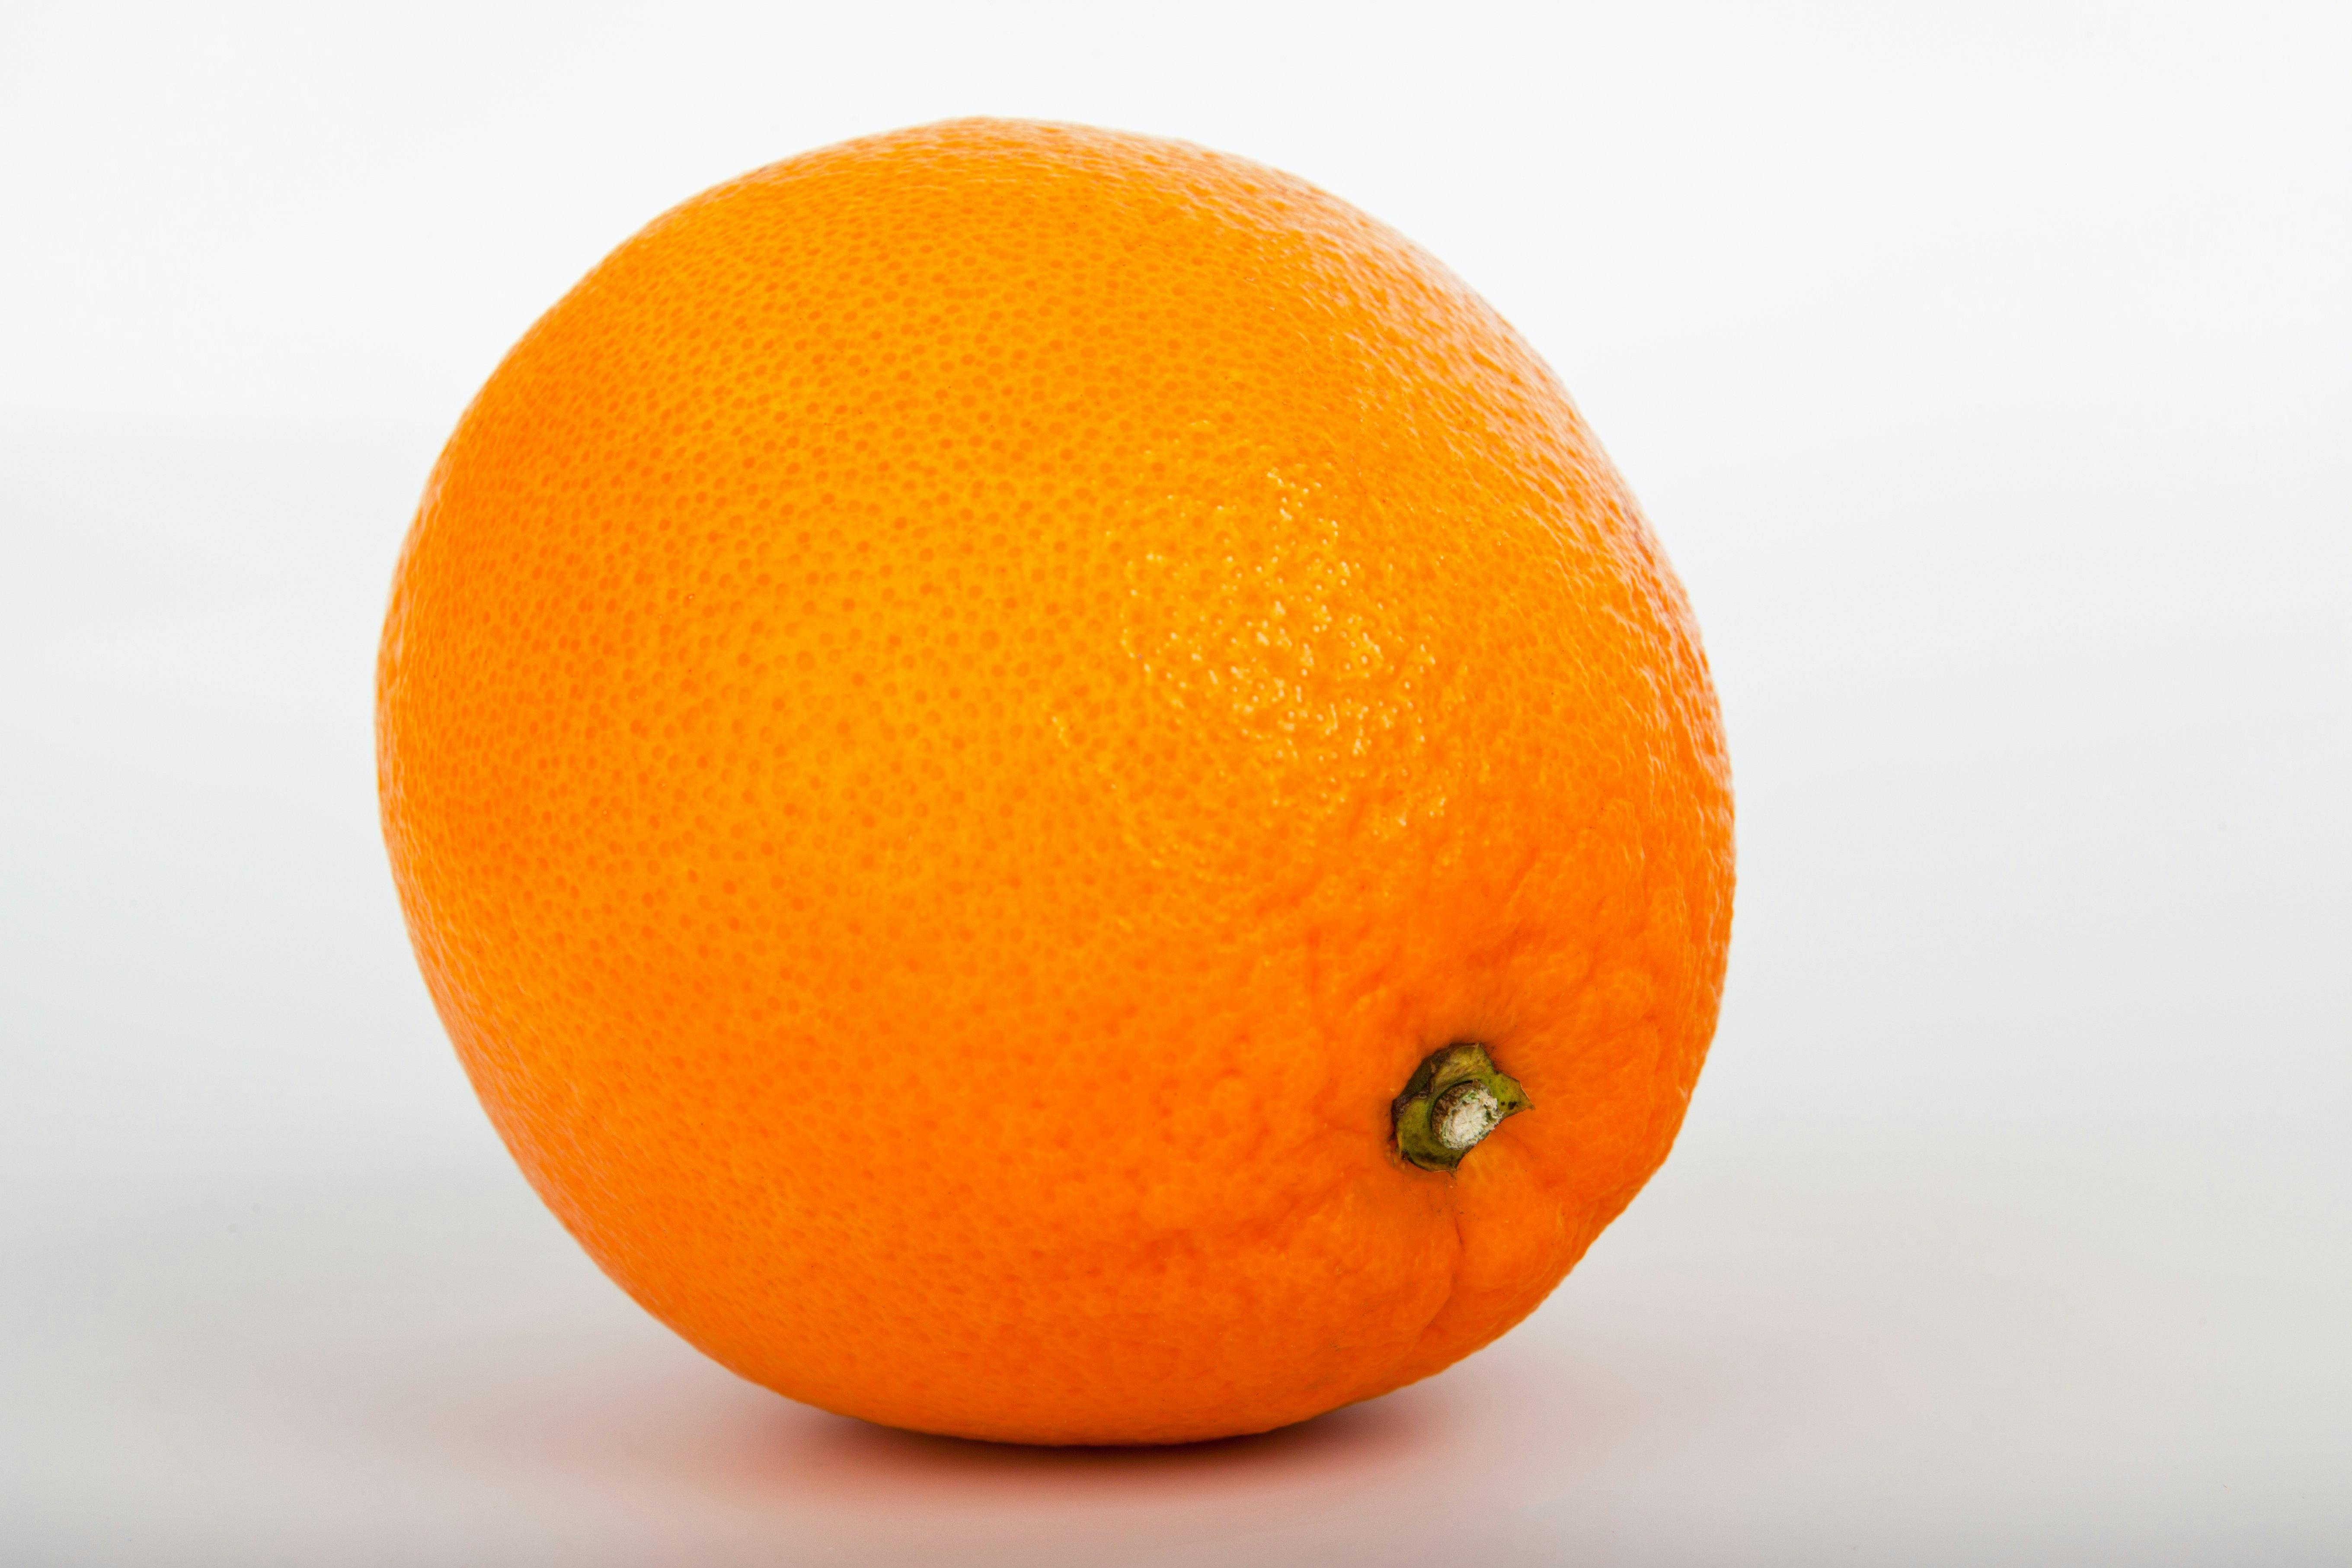  Orange  Fruit   Free Stock Photo